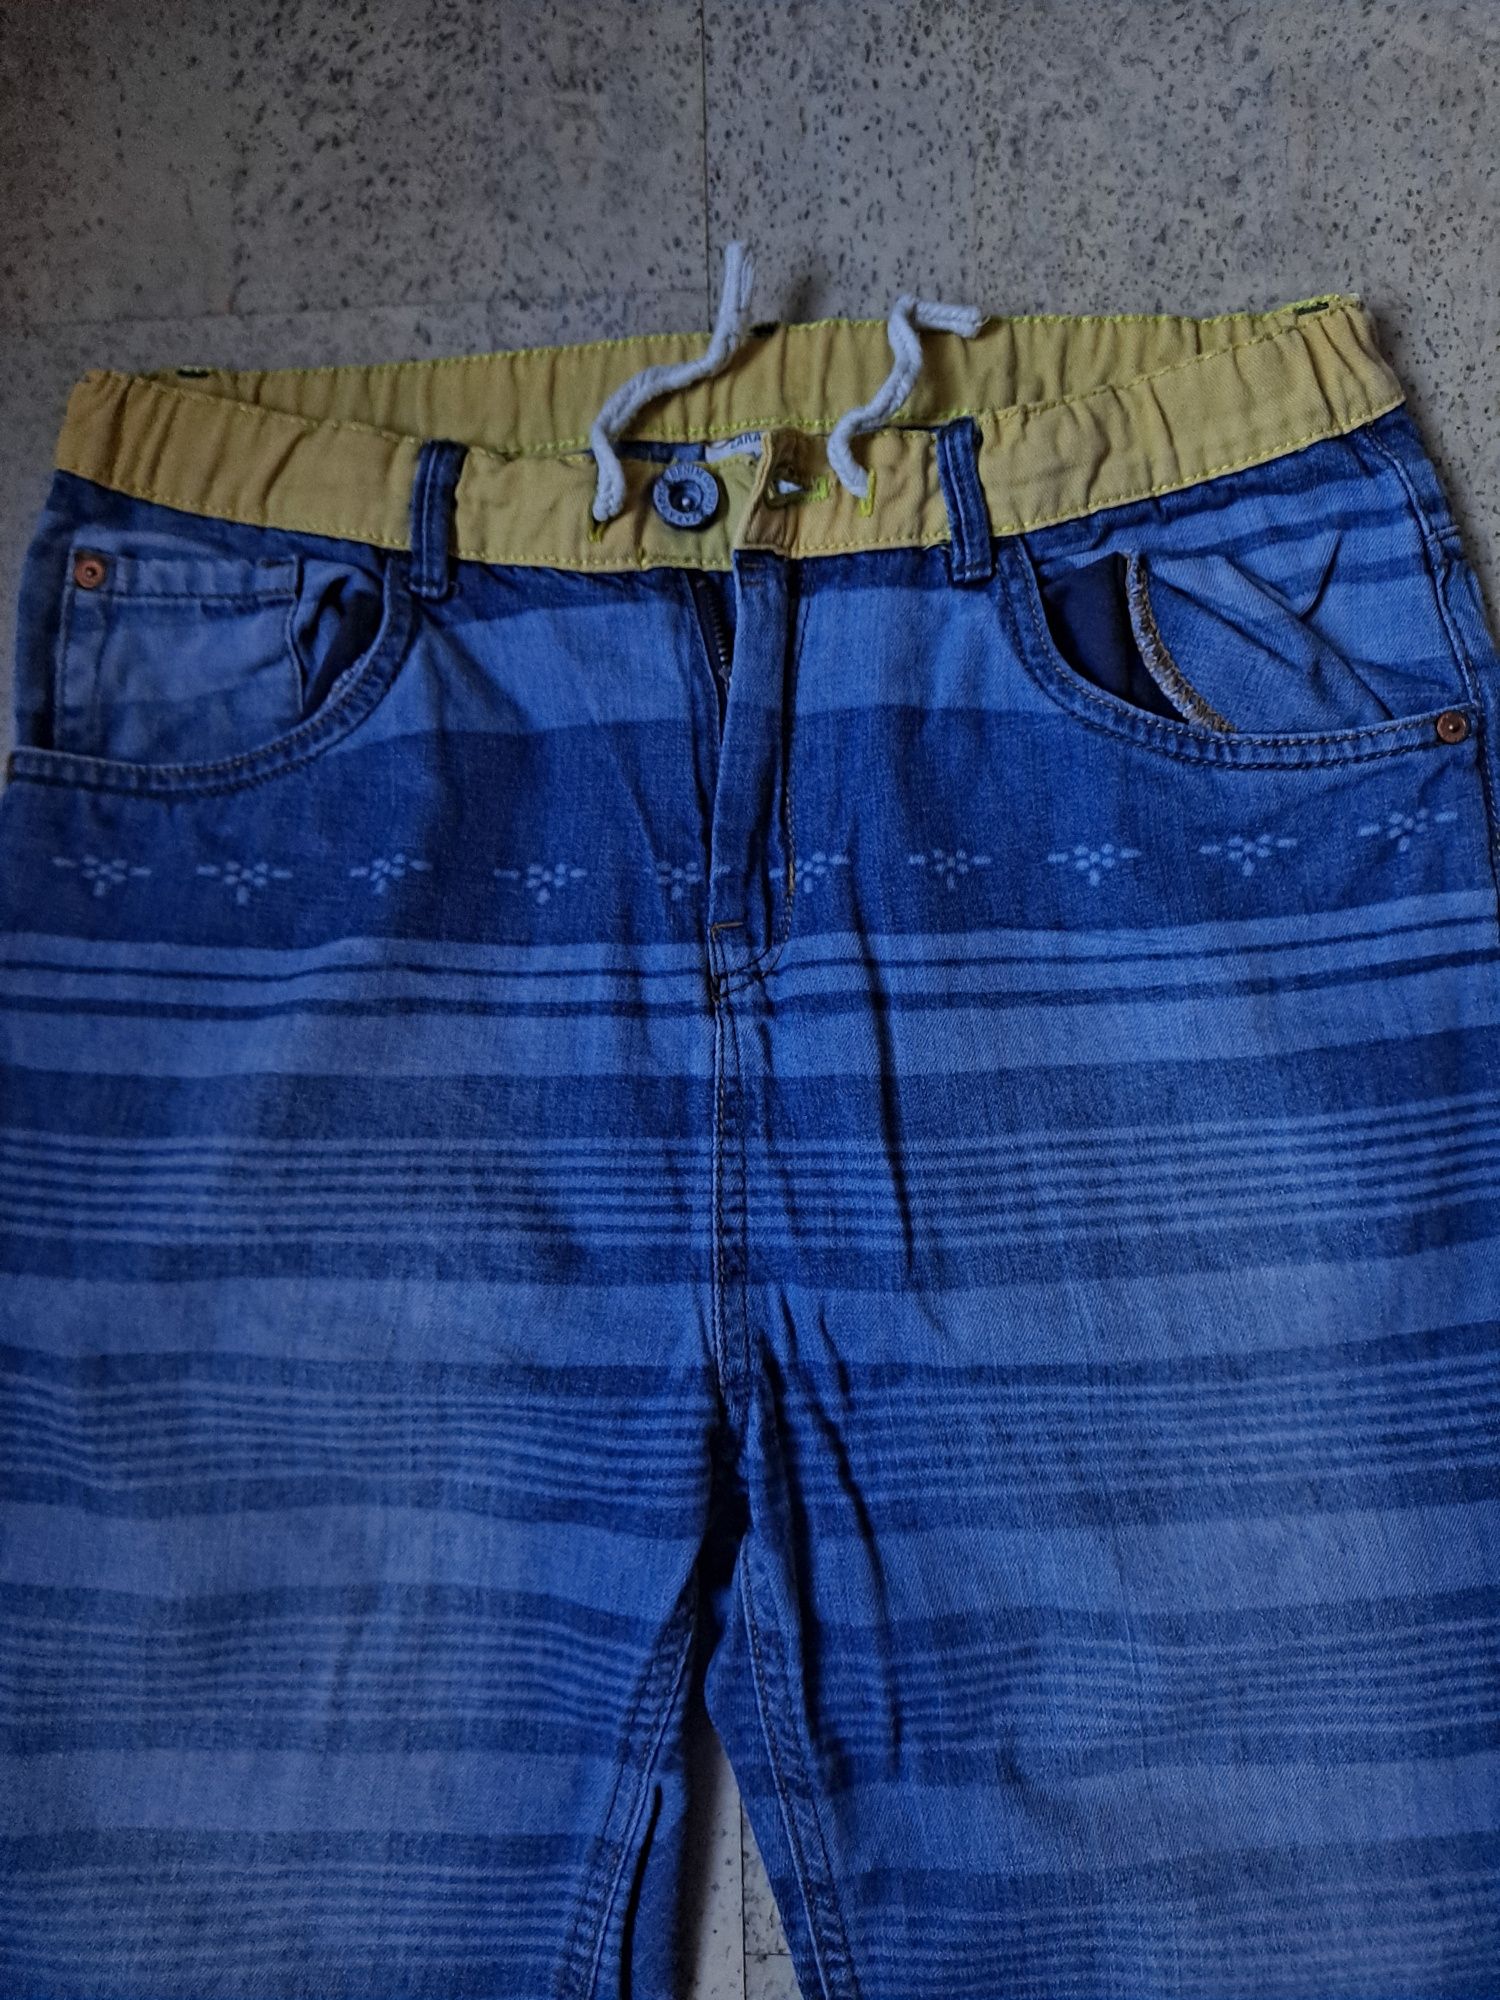 Spodenki krótkie spodnie Zara Boys 164 cm bawełna 100%